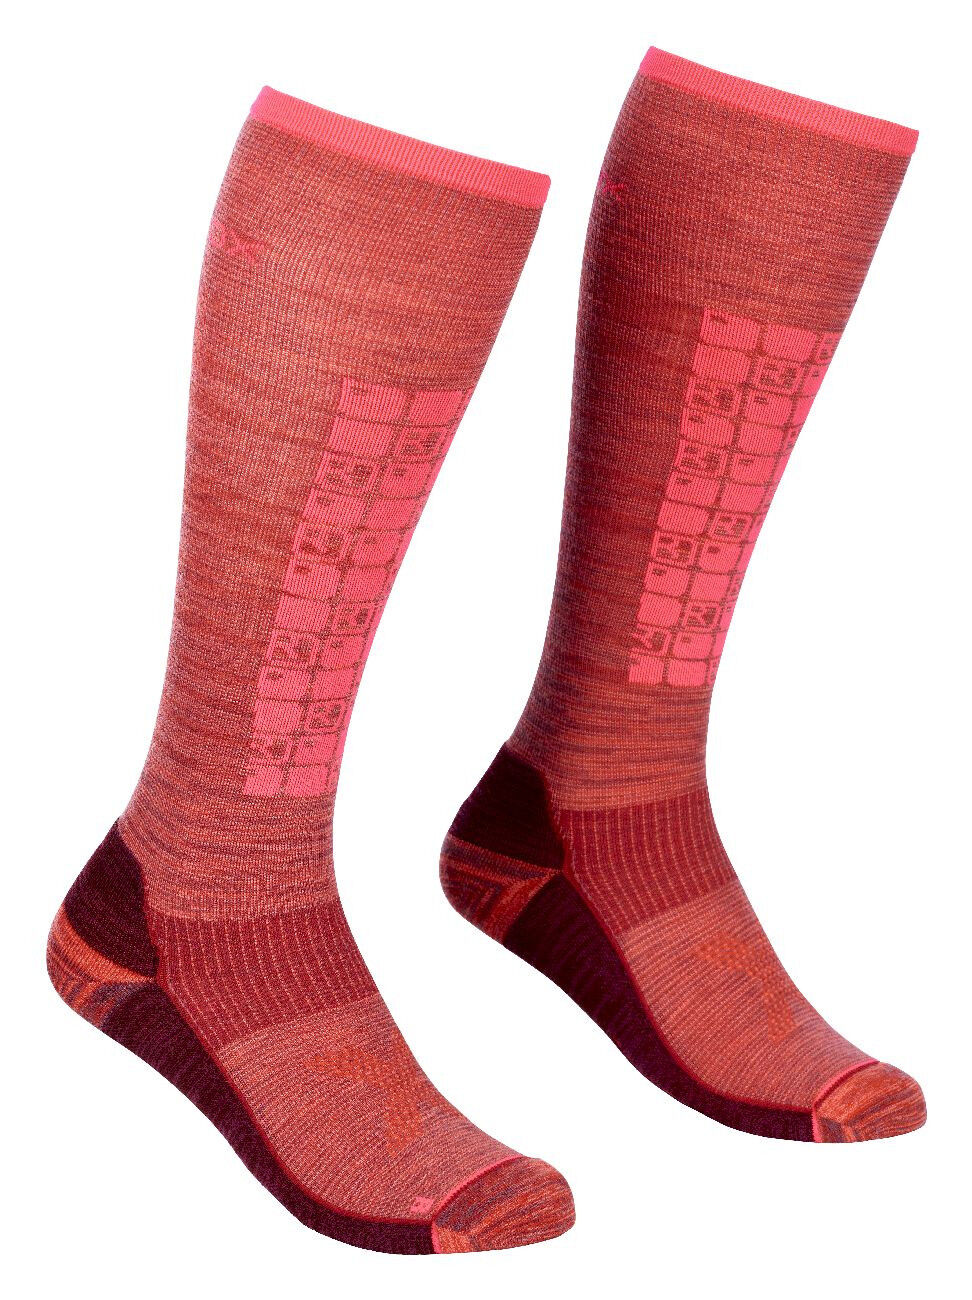 Ortovox Ski Compression Long Socks - Ski socks - Women's